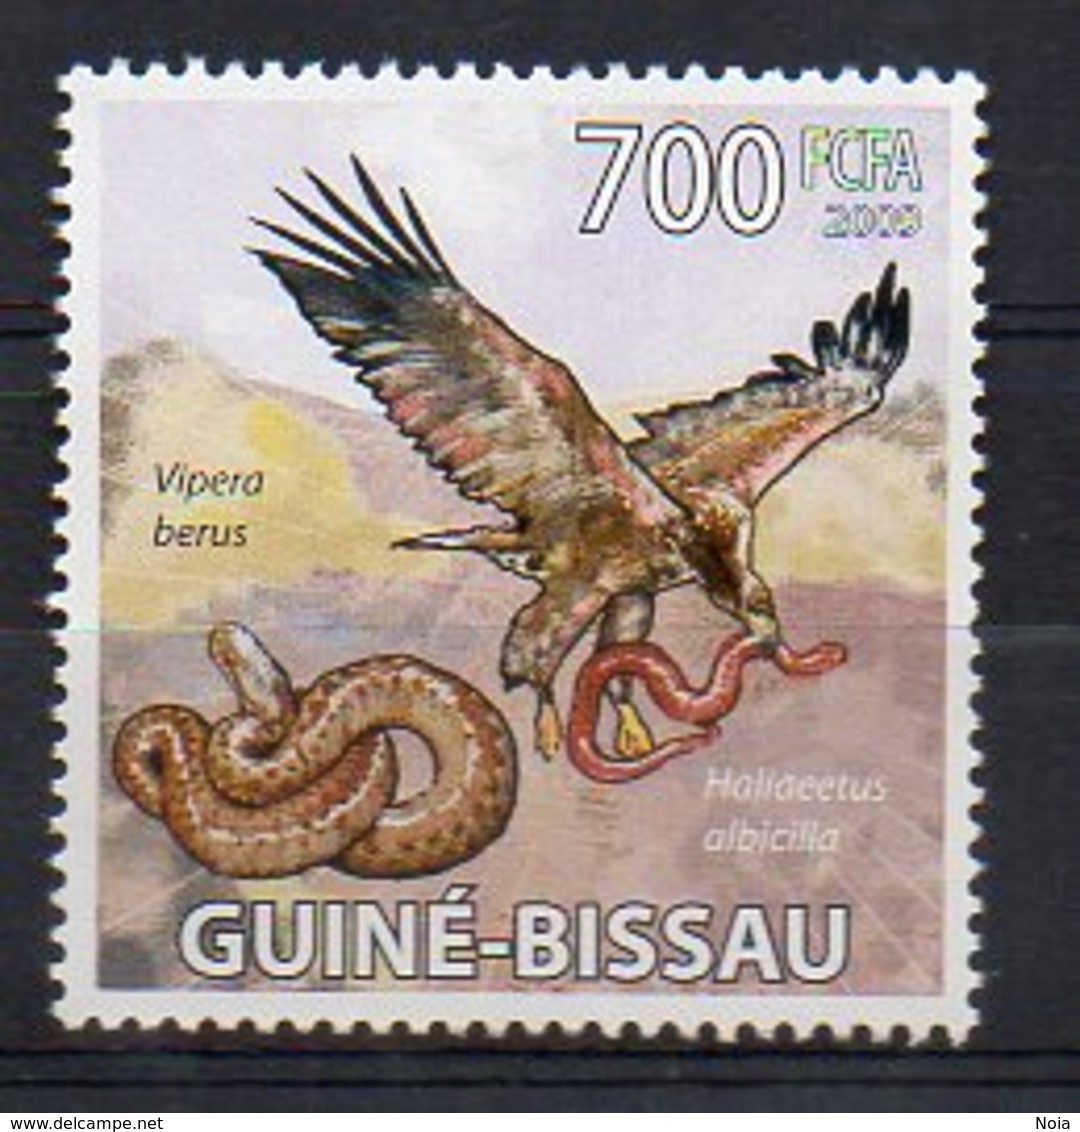 GUINEA-BISSAU. BIRDS RAPTORS. MNH (2R1017) - Eagles & Birds Of Prey